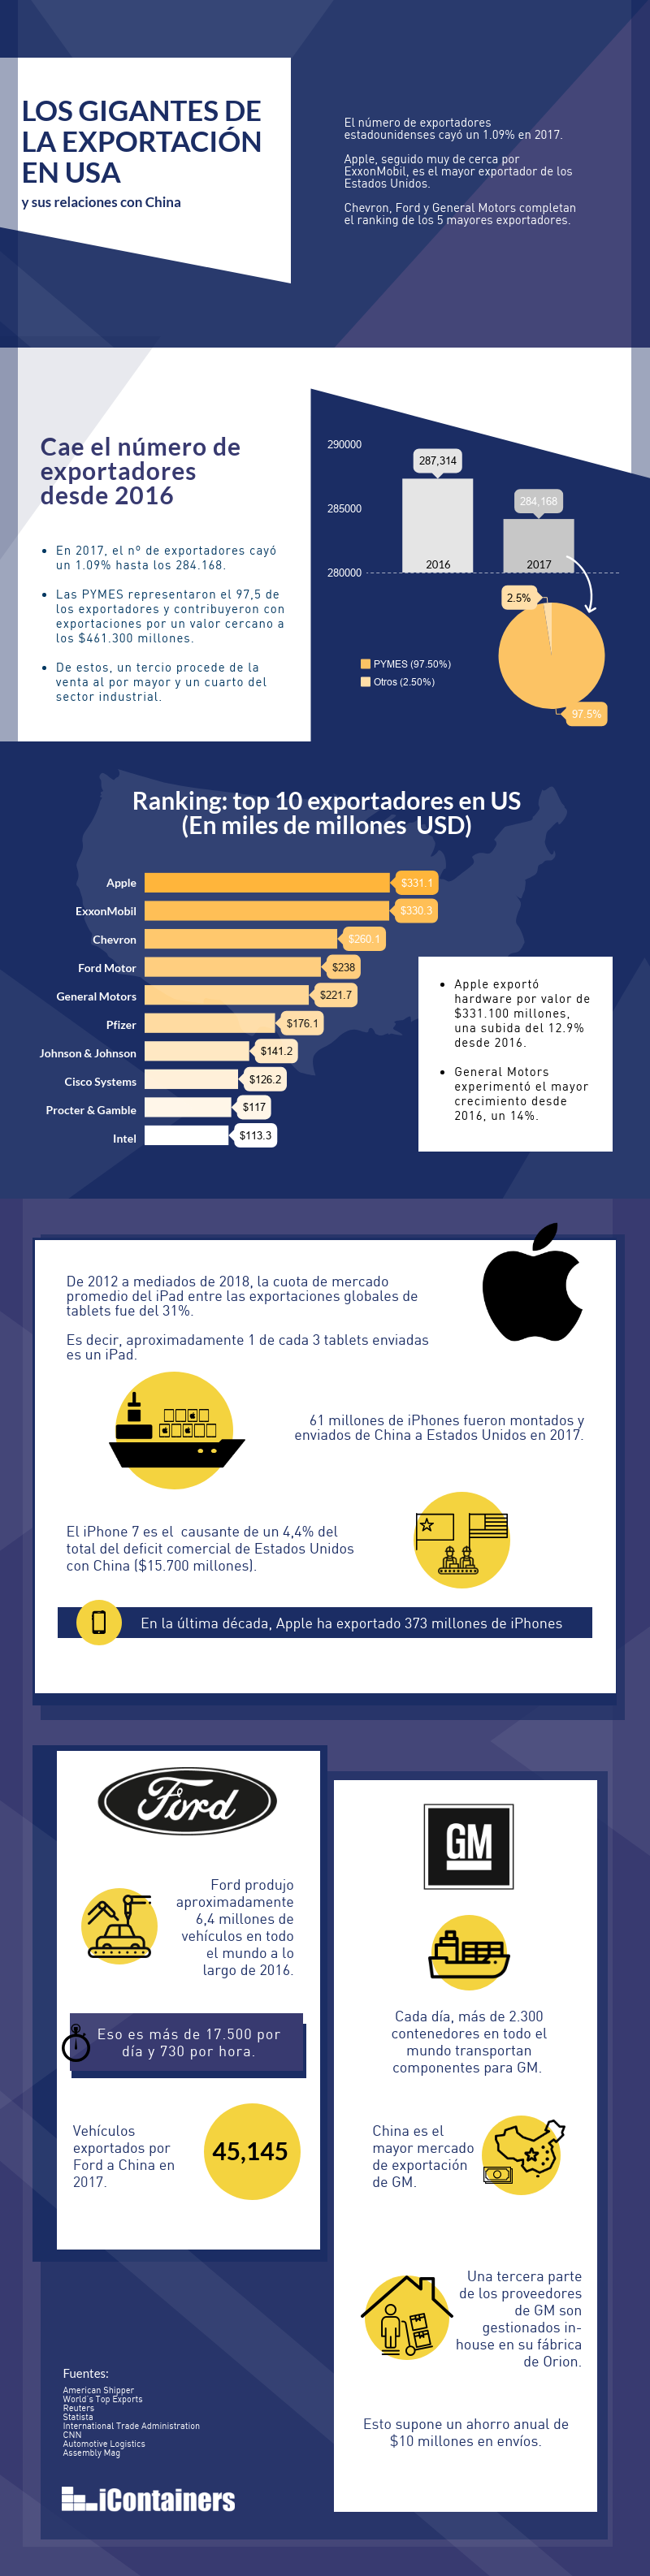 infografia-quienes-son-las-empresas-con-ayores-exportaciones-en-us.png